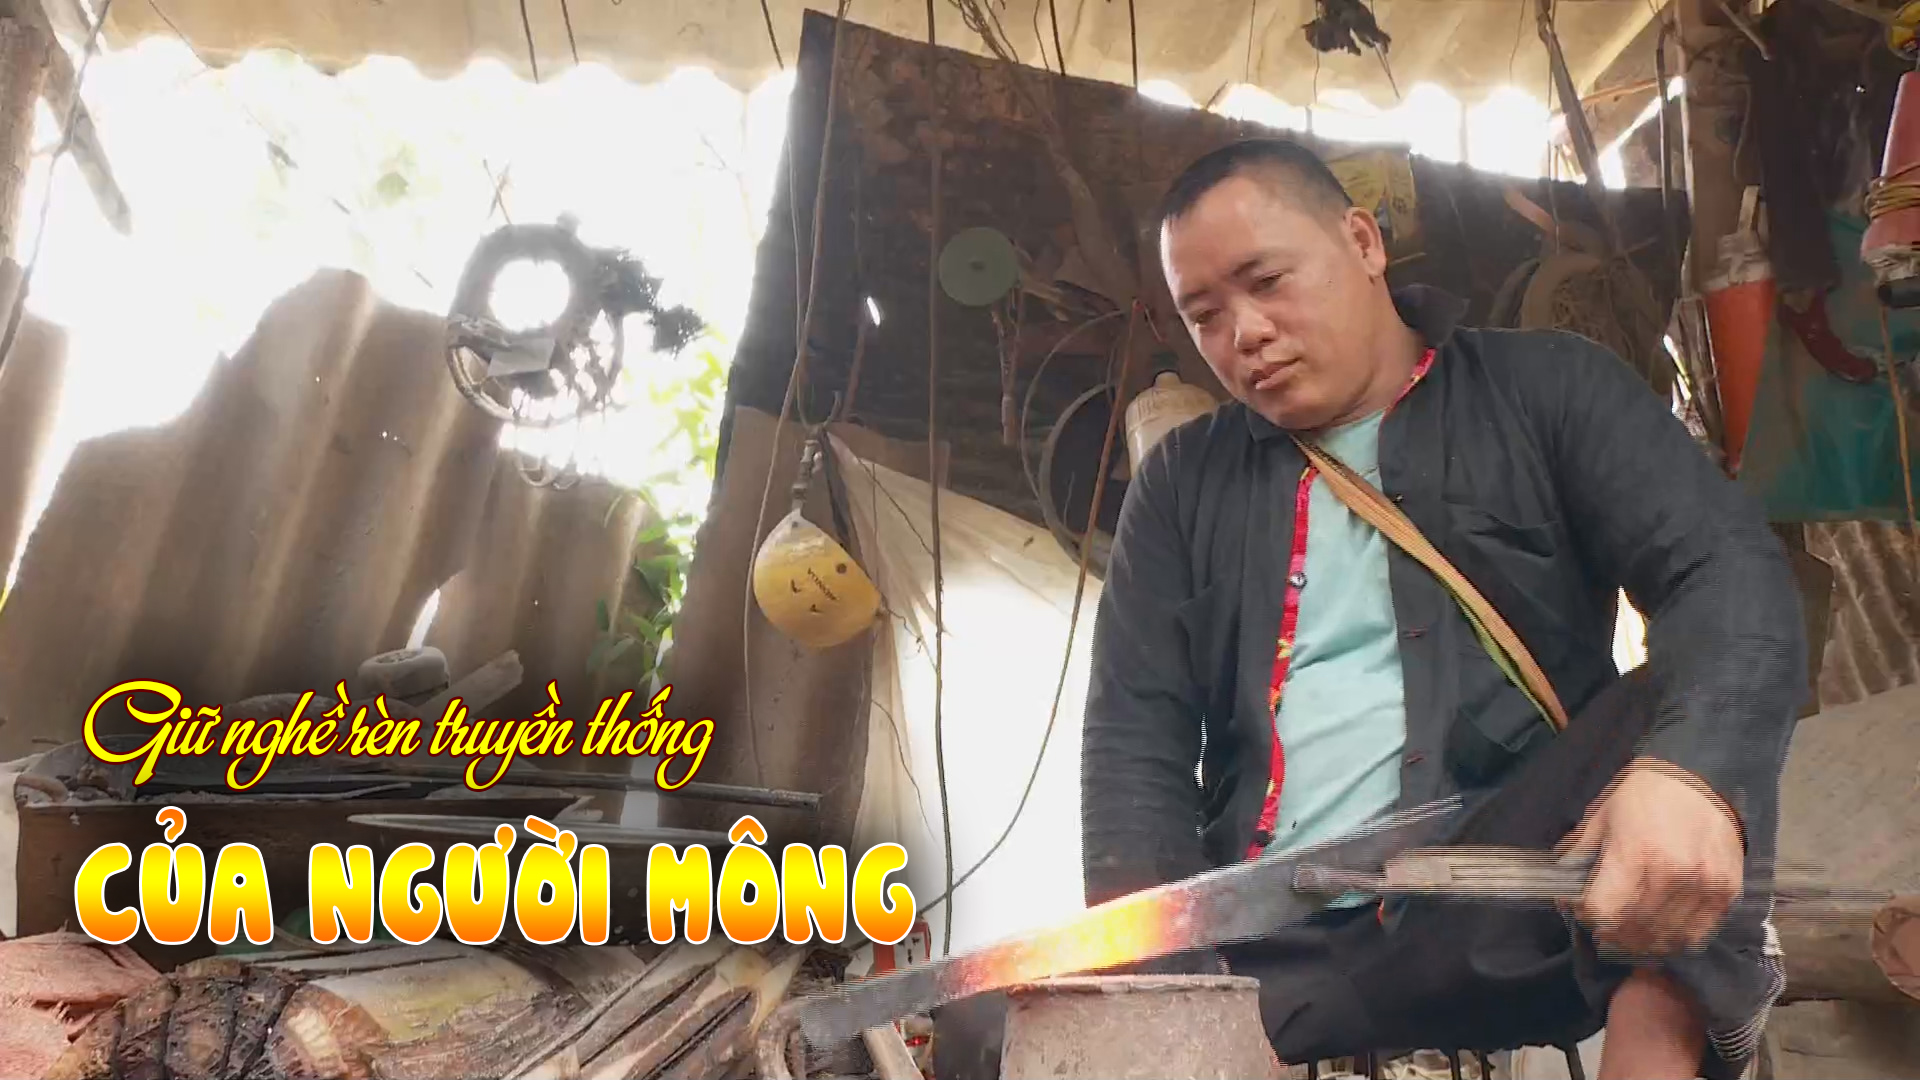 Giữ nghề rèn truyền thống của người Mông